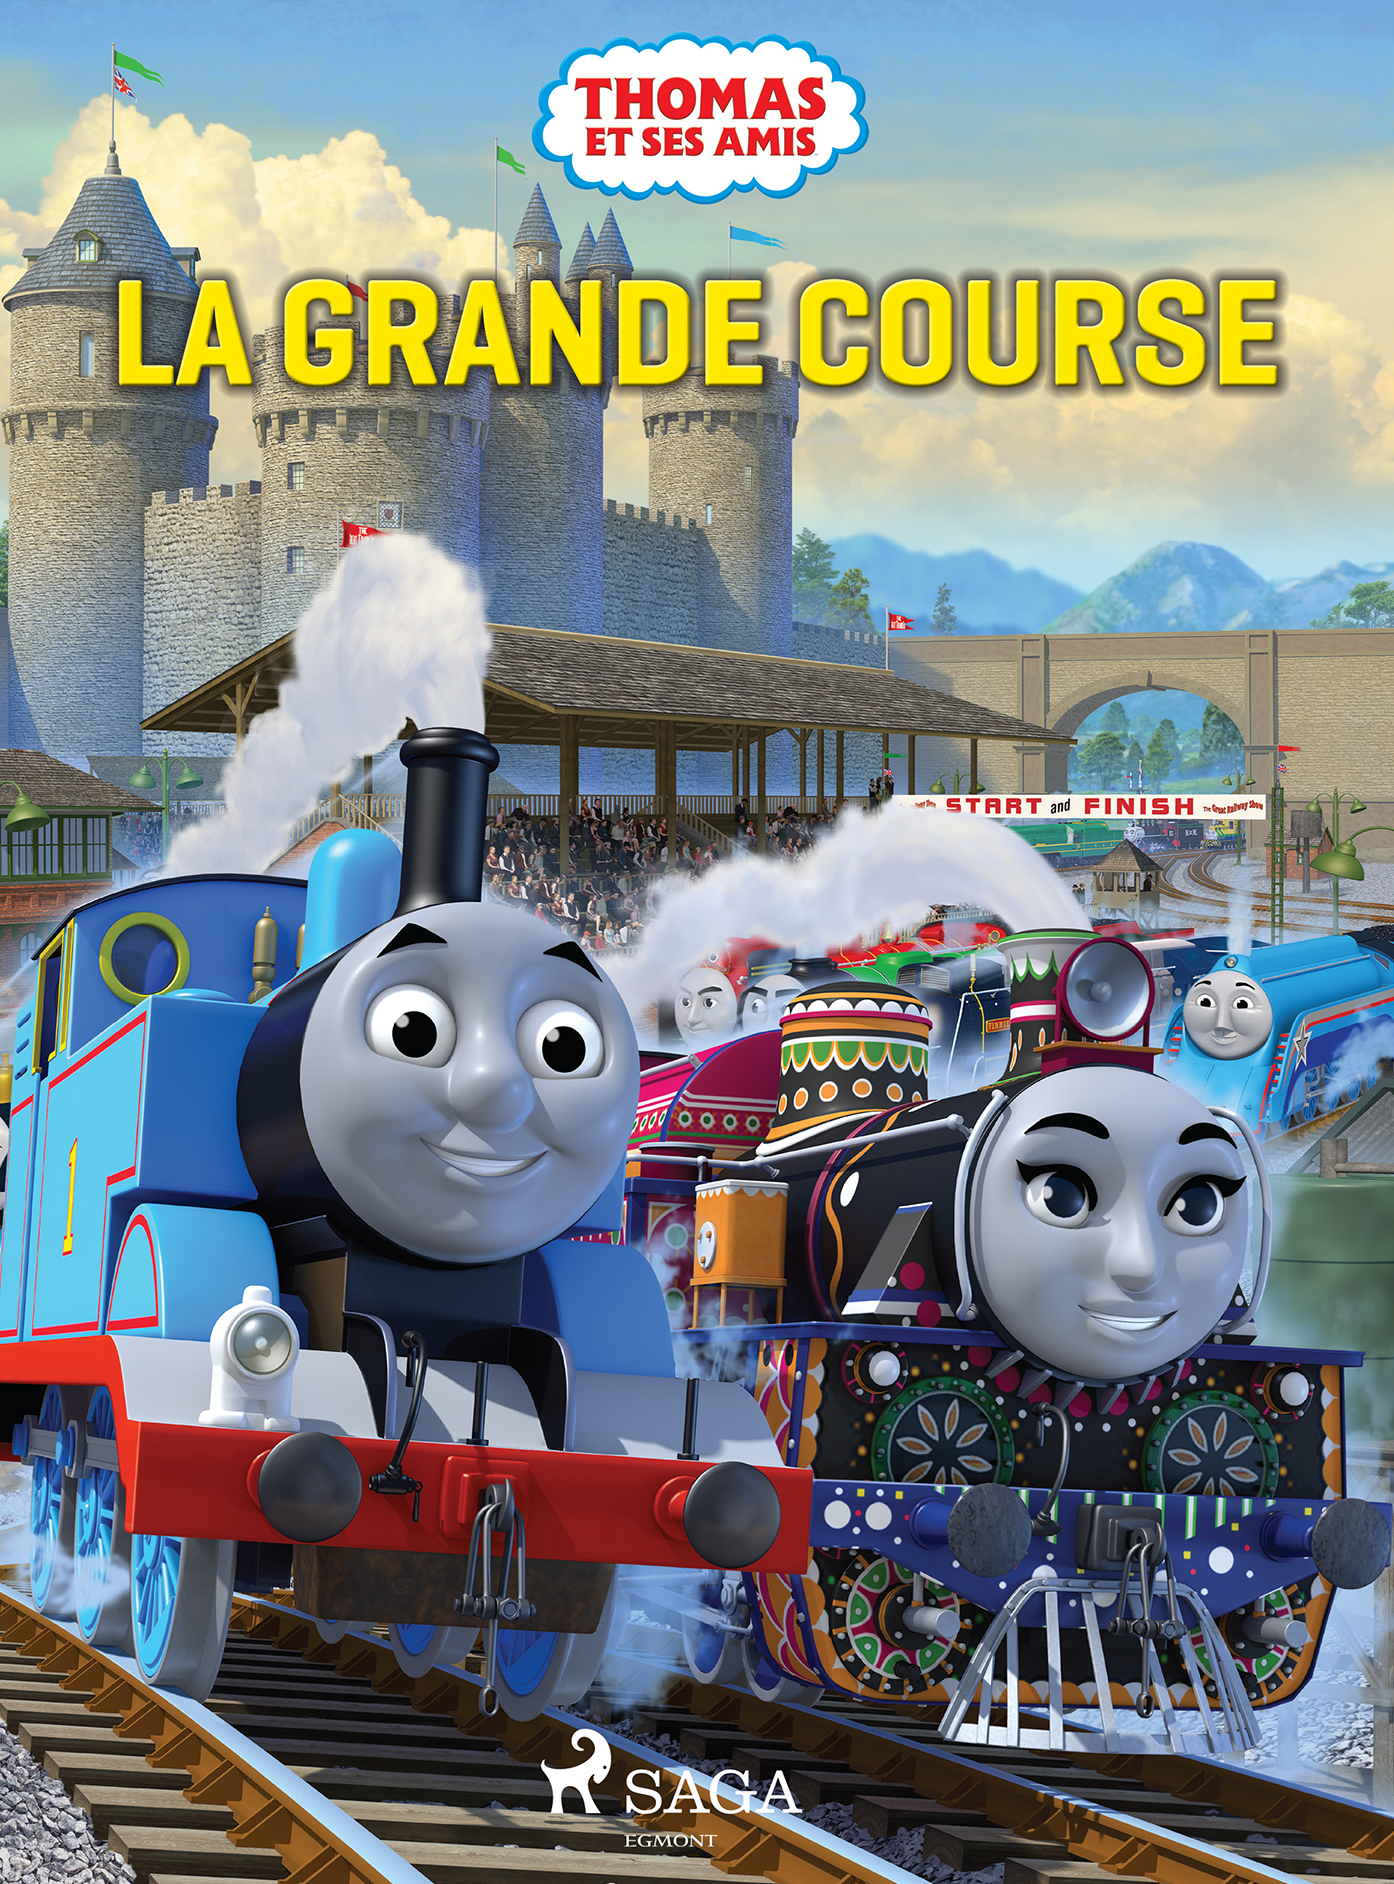 Thomas et ses amis - La grande course